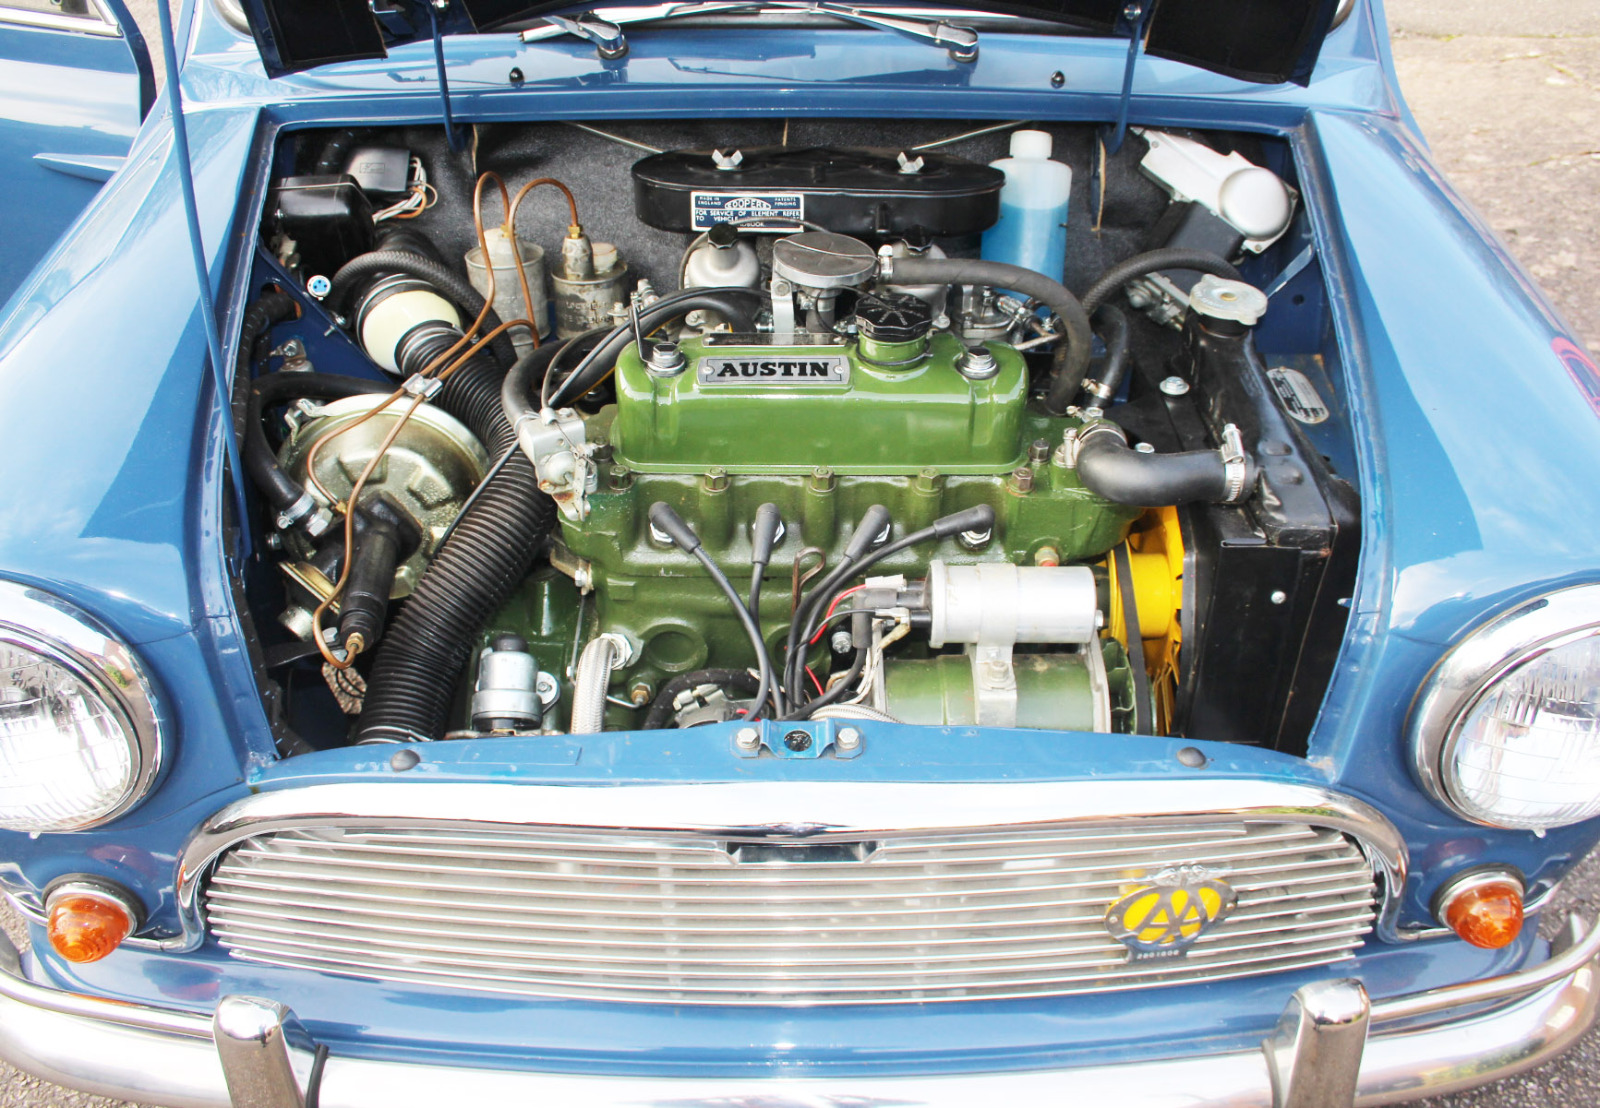 1967 Austin Mini Cooper S - Image 7 of 10